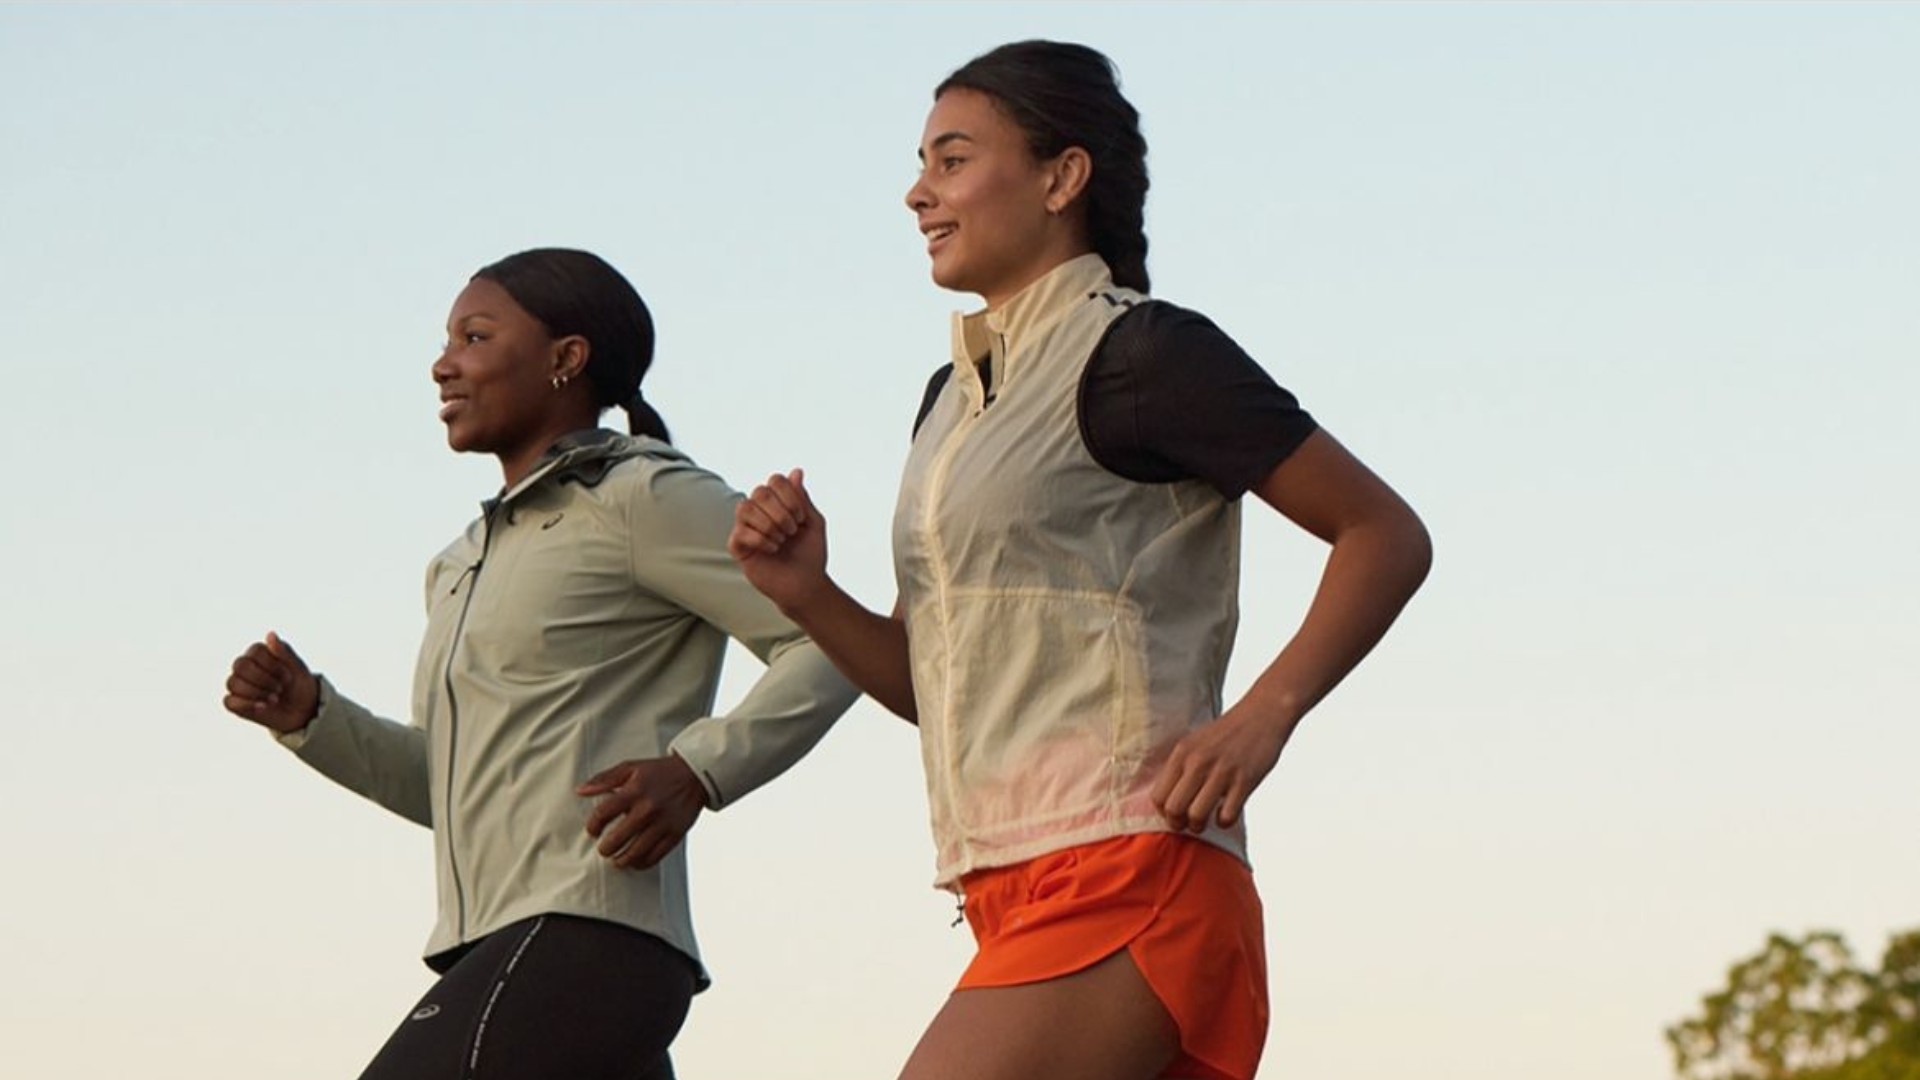 ASICS revela os principais desafios enfrentados pelas mulheres para praticar exercício físico